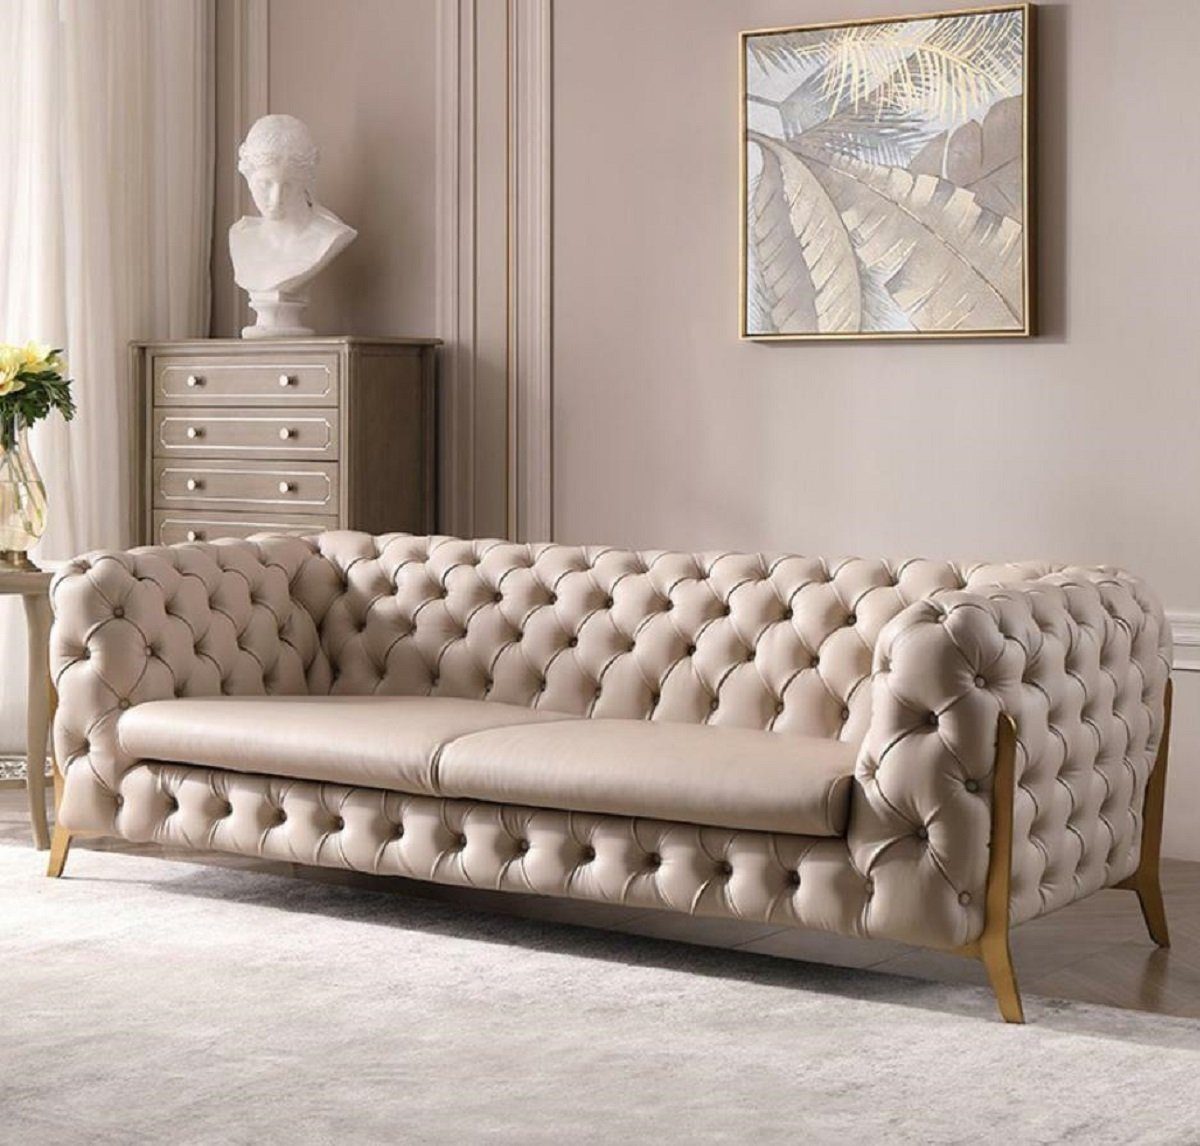 JVmoebel Sofa Chesterfield beige großer Dreisitzer luxus Möbel Sofa,  Dreisitzer. Ohne Kommode, Made in Europe